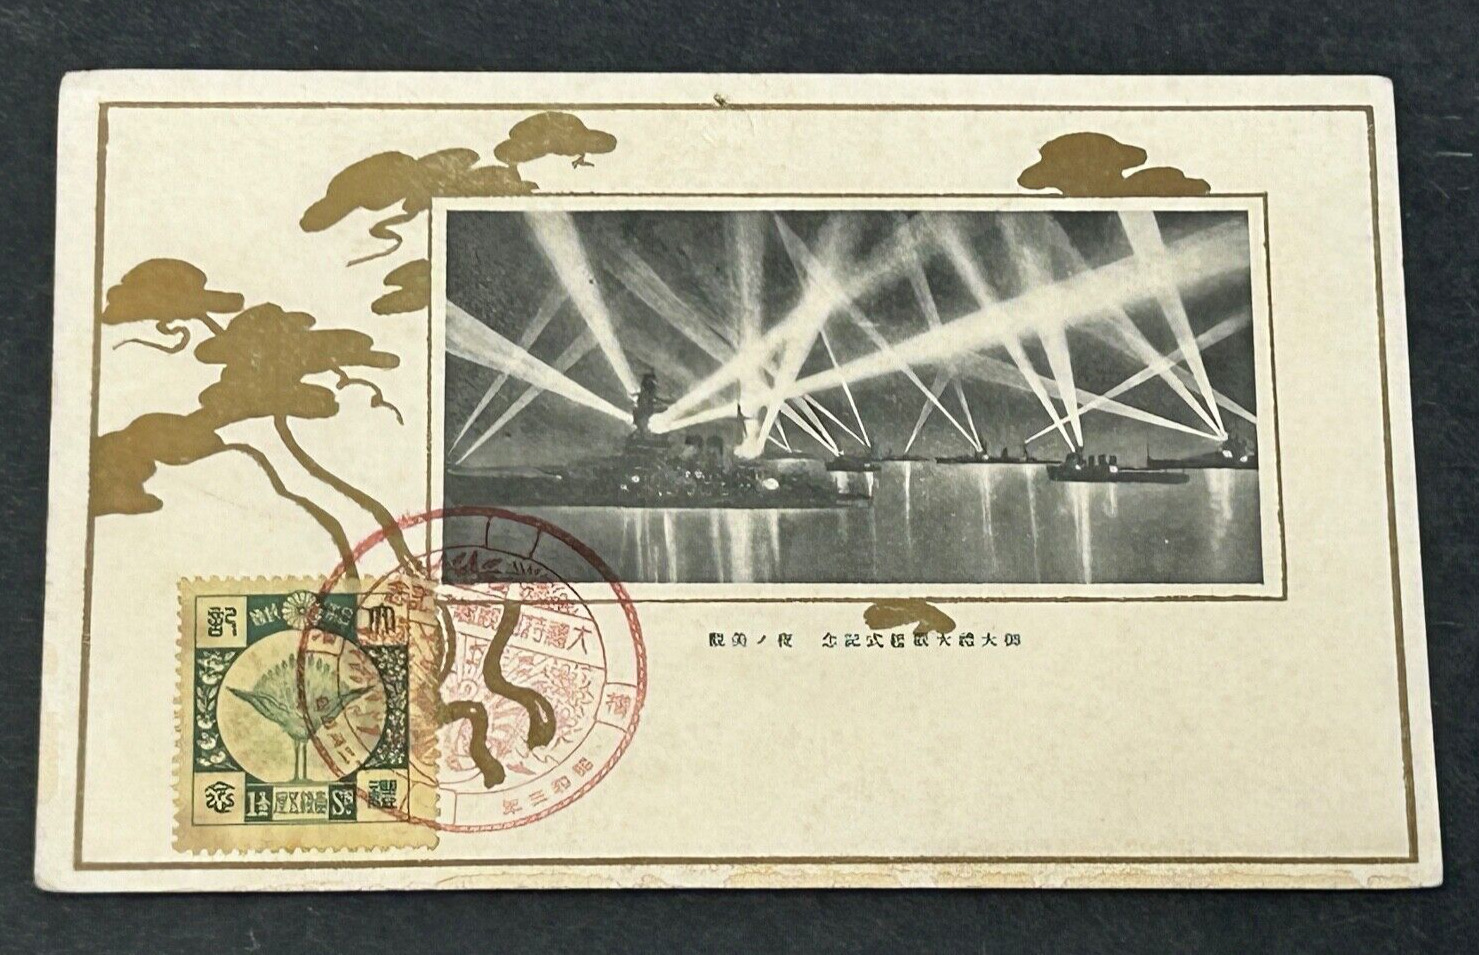 1928 Imperial Japanese Navy Fleet Week Postcard